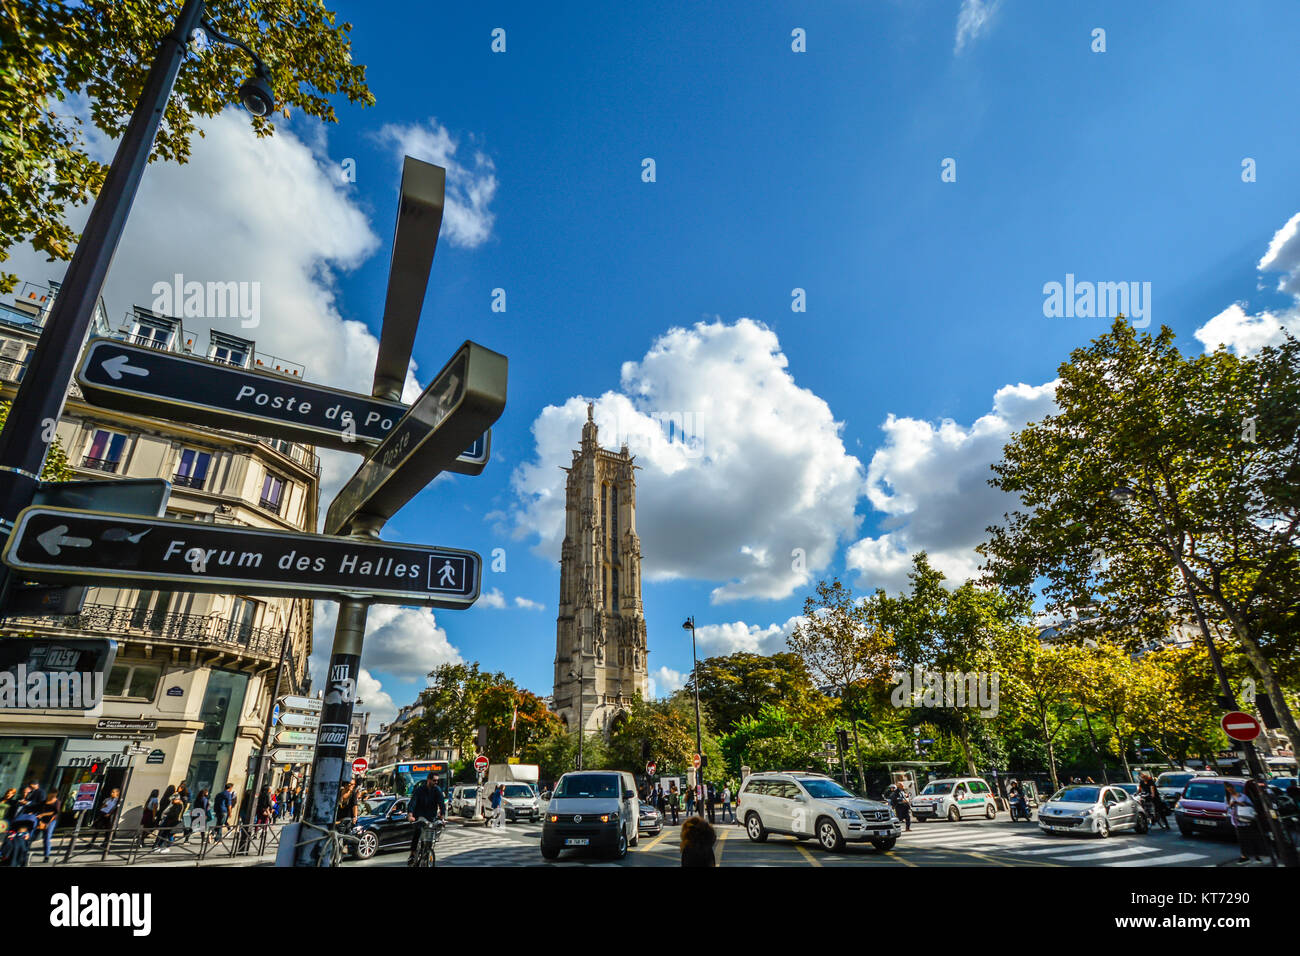 Die lebendige, belebten Rue de Rivoli in Paris Frankreich an einem sonnigen Tag im Frühherbst mit der gotischen St. Jacques Tower im Hintergrund Stockfoto